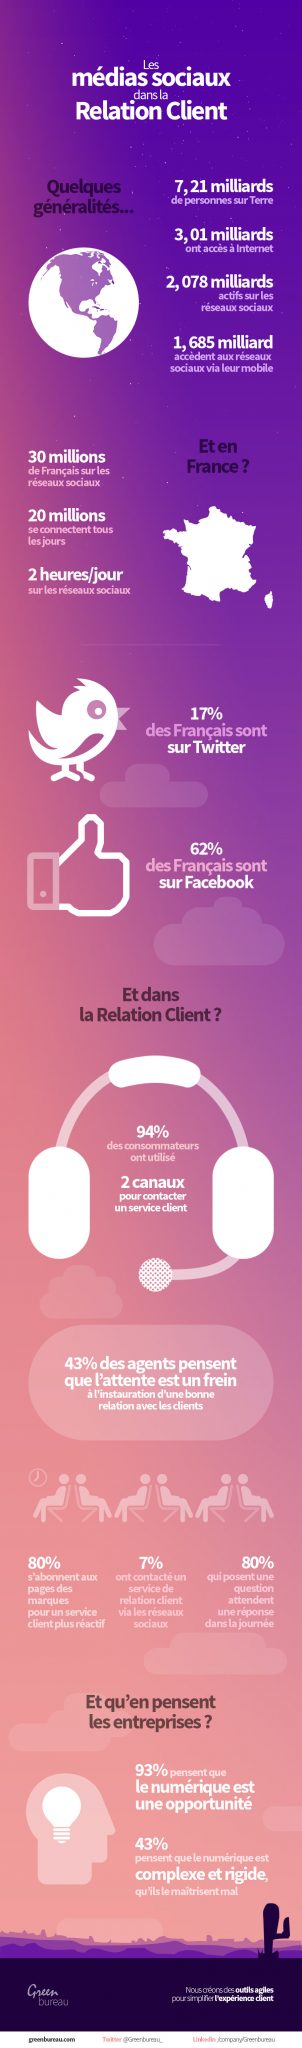 infographie-media-sociaux-relation-client